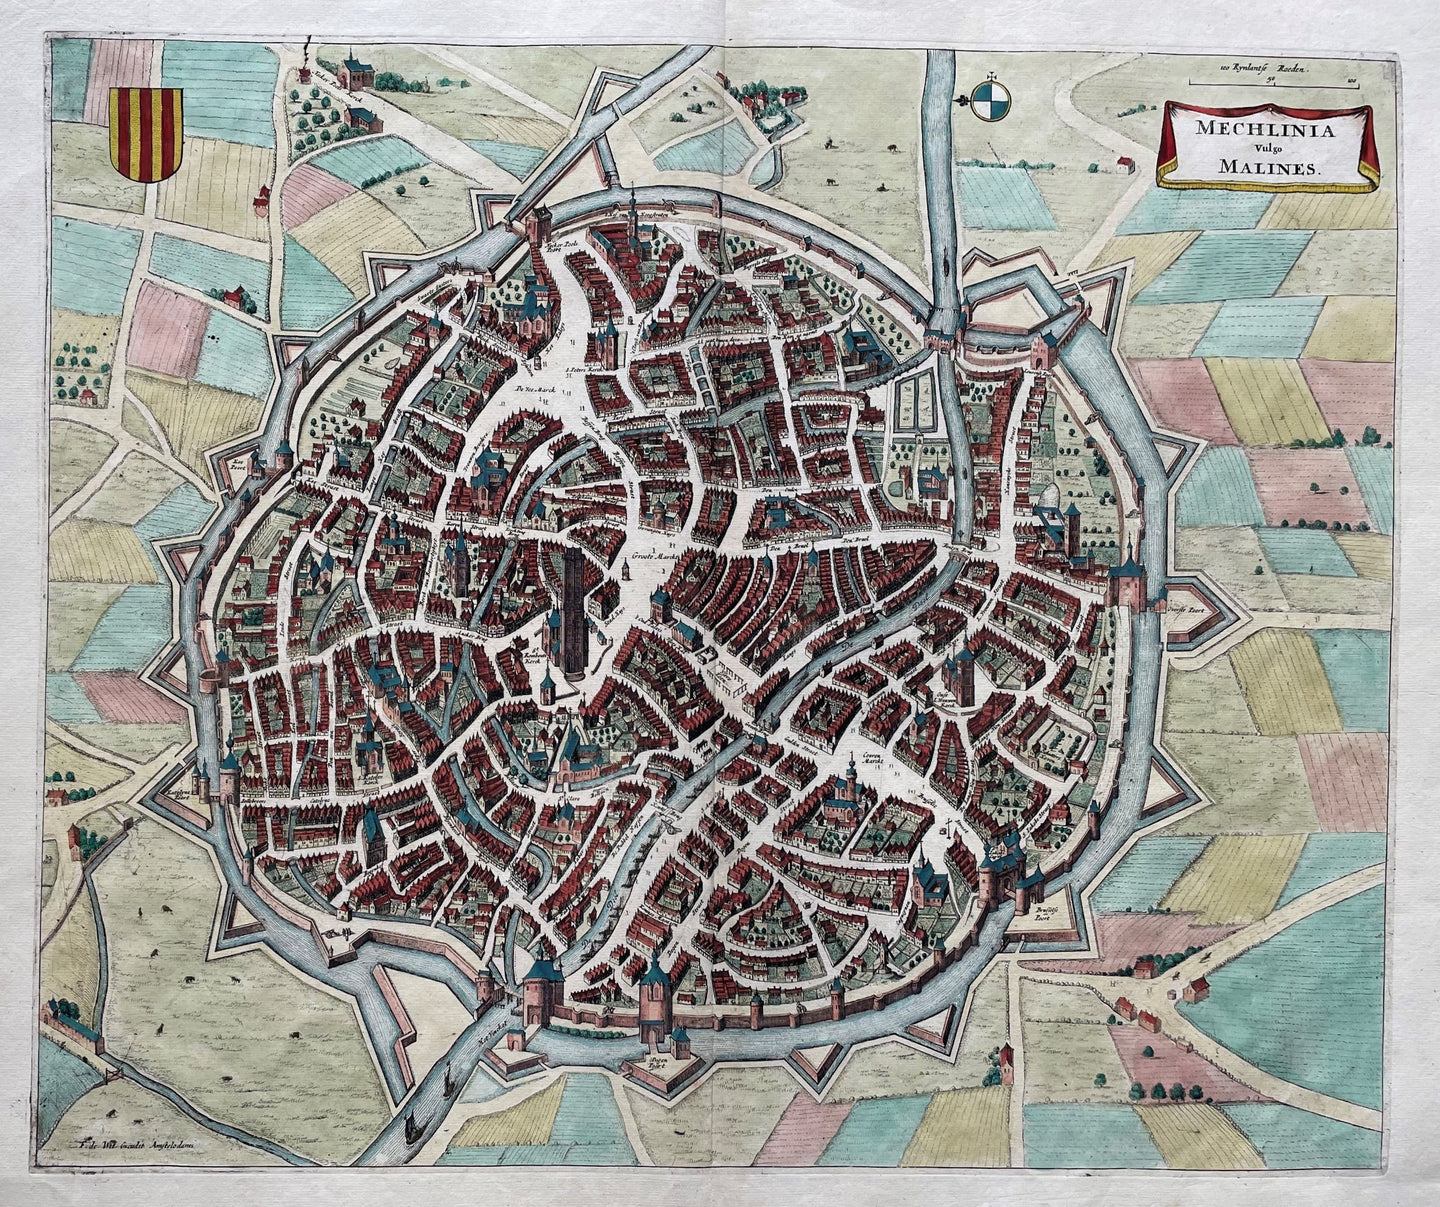 België Mechelen Belgium Stadsplattegrond in vogelvluchtperspectief - Frederick de Wit - 1698